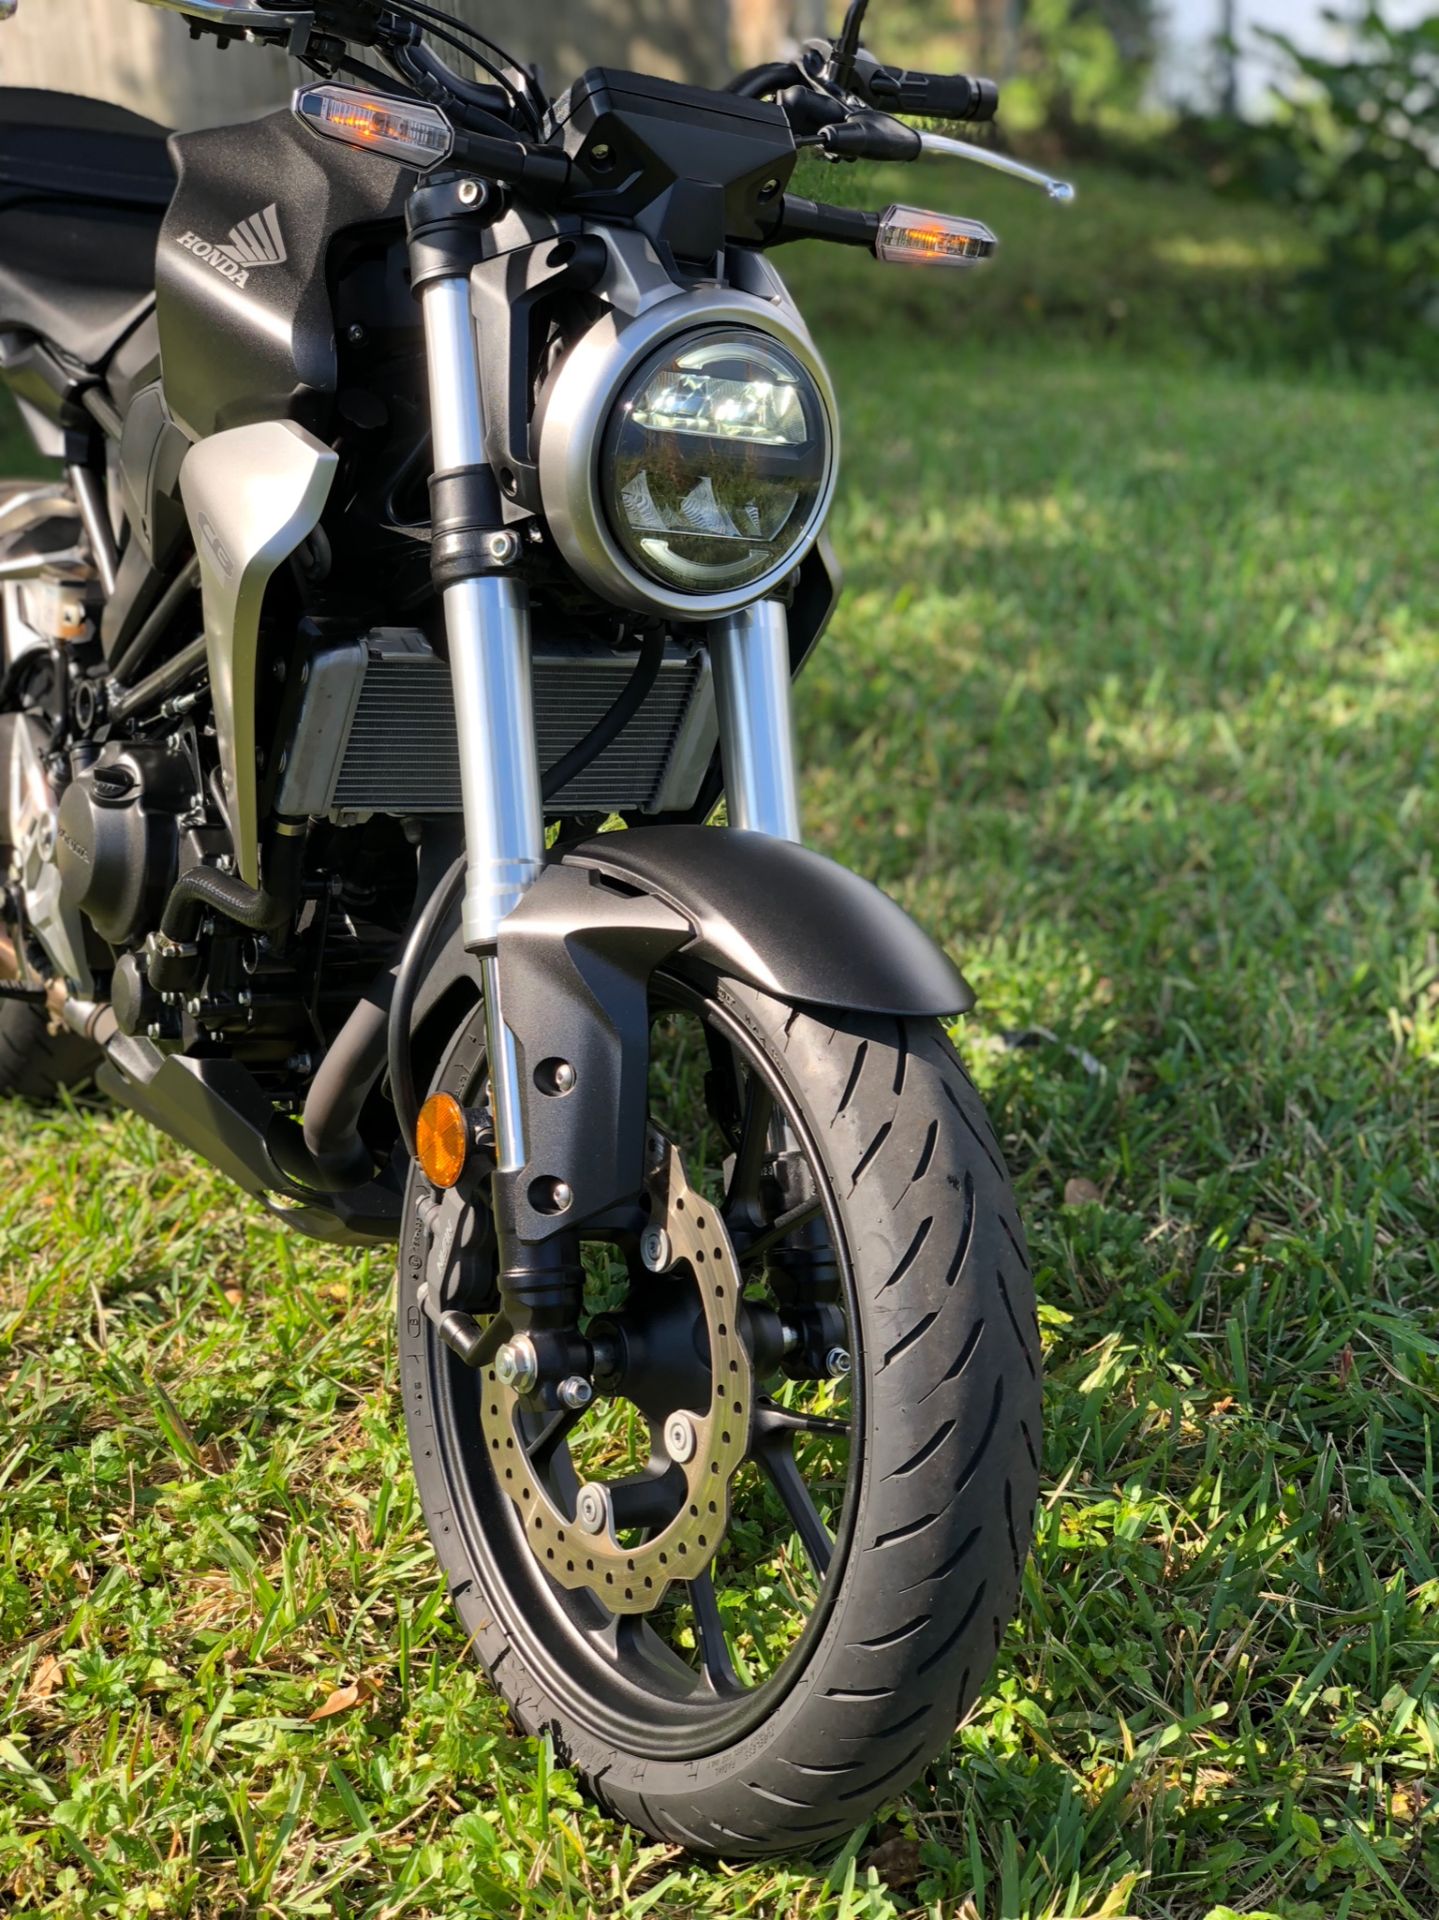 2019 Honda CB300R in North Miami Beach, Florida - Photo 6